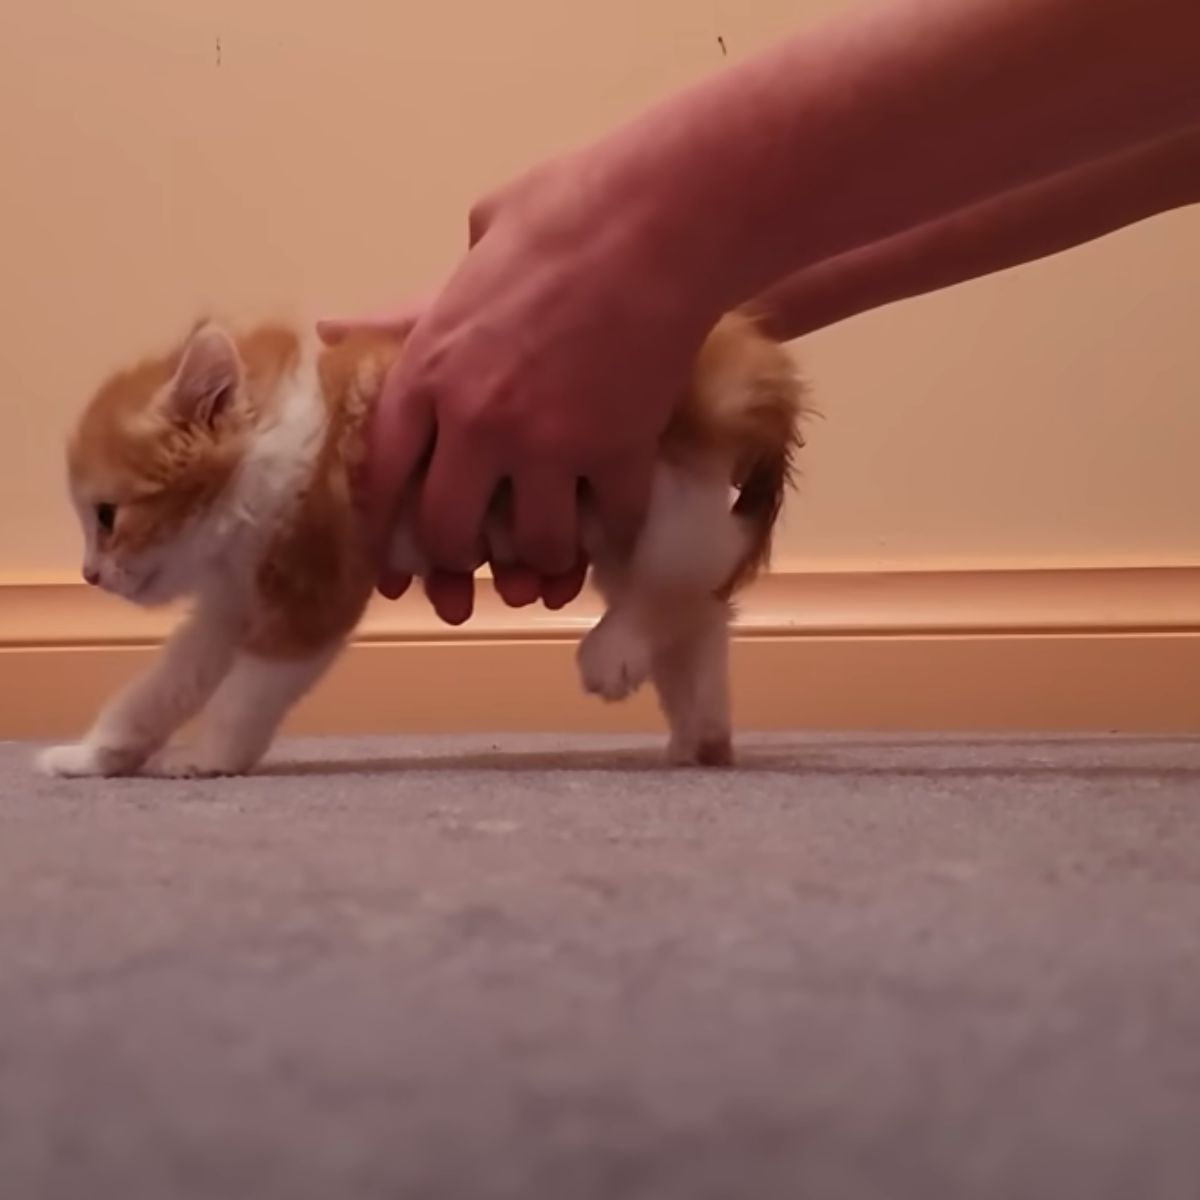 female helping kitten walk